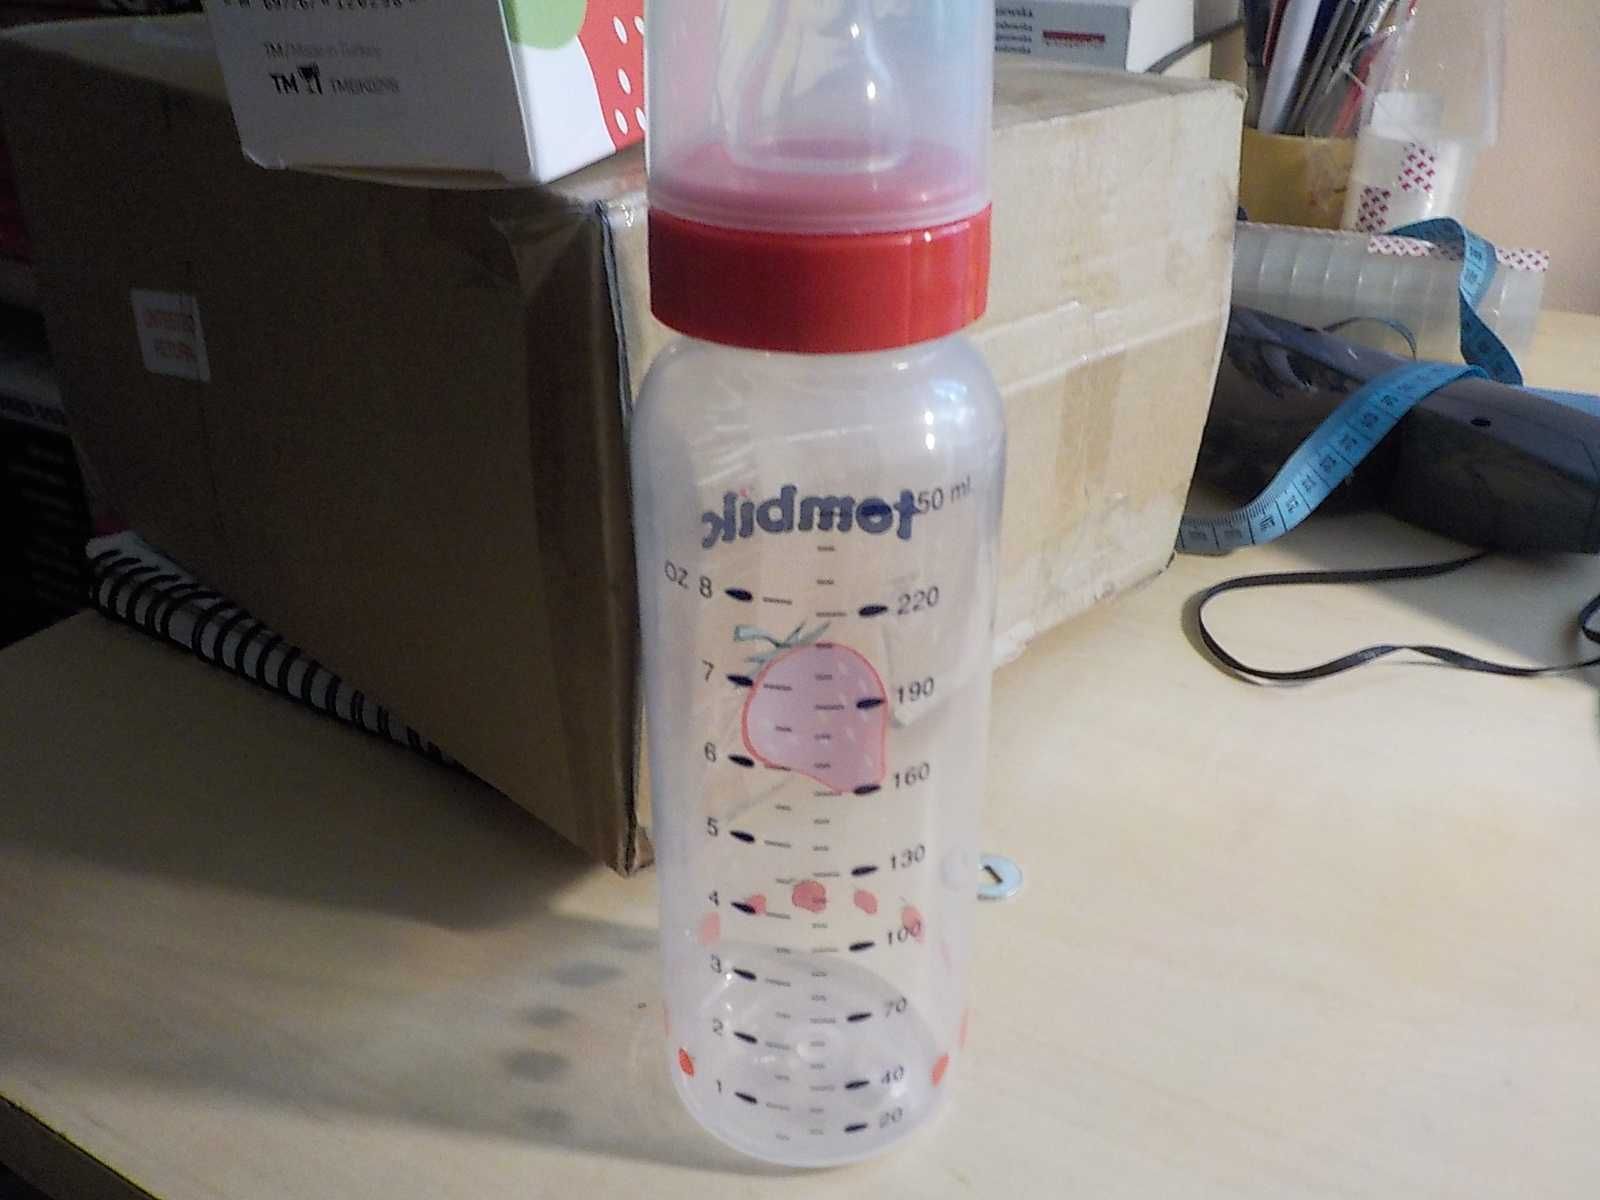 Tombik butelka dla niemowląt z podziałką 250 ml